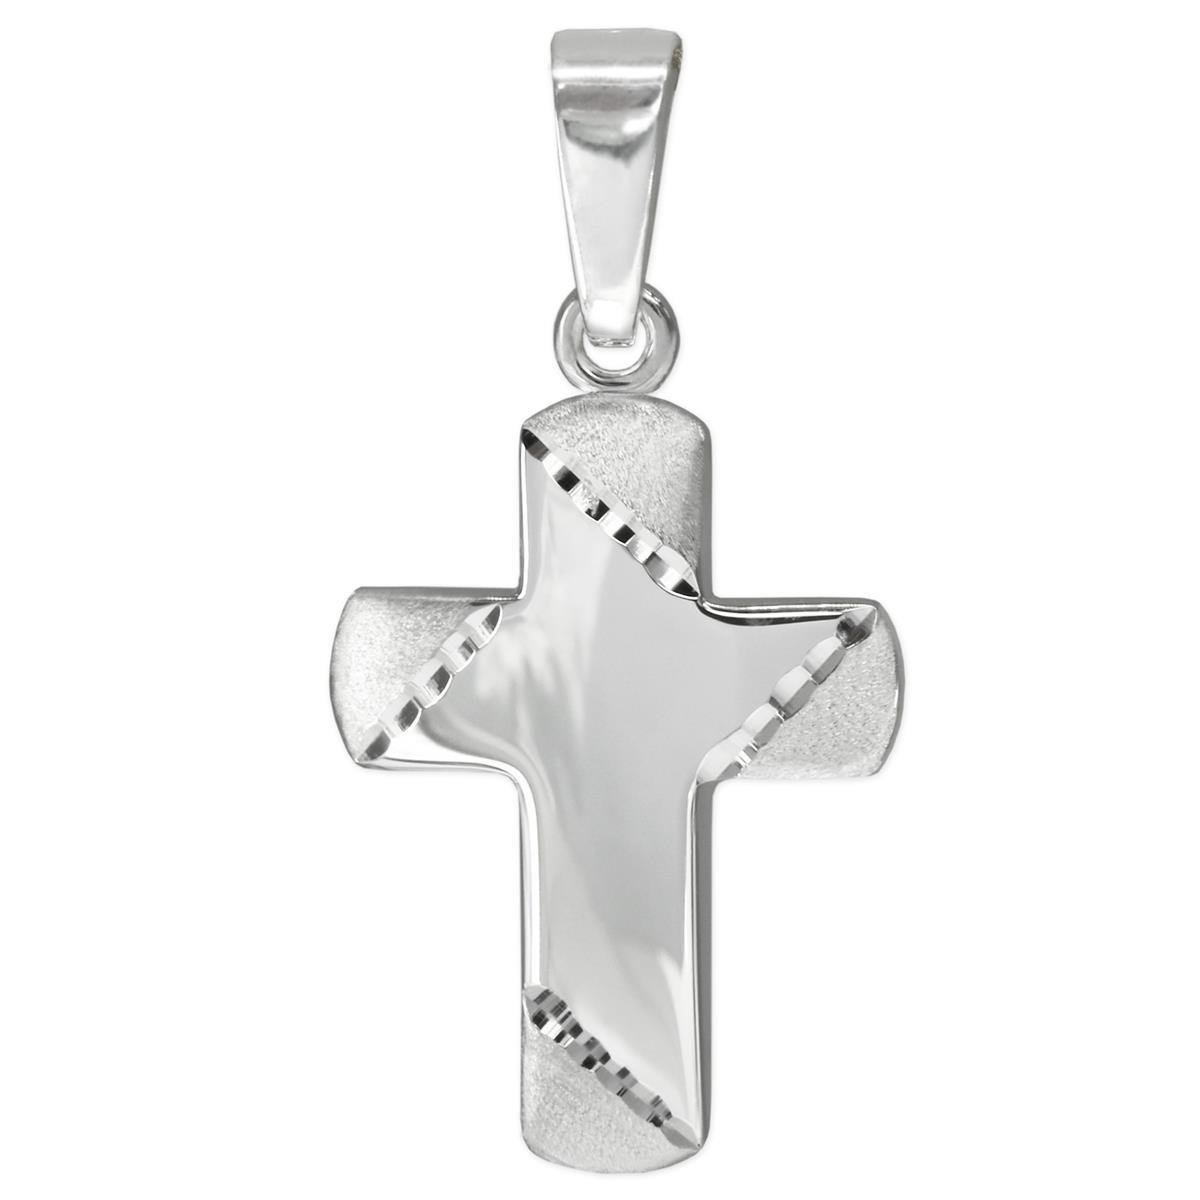 Silbernes Kinder Kreuz 15 x 12 mm glänzend, leicht gewölbte Form, breite Kreuzbalken, Kreuzenden schräg matt diamantiert Sterling Silber 925